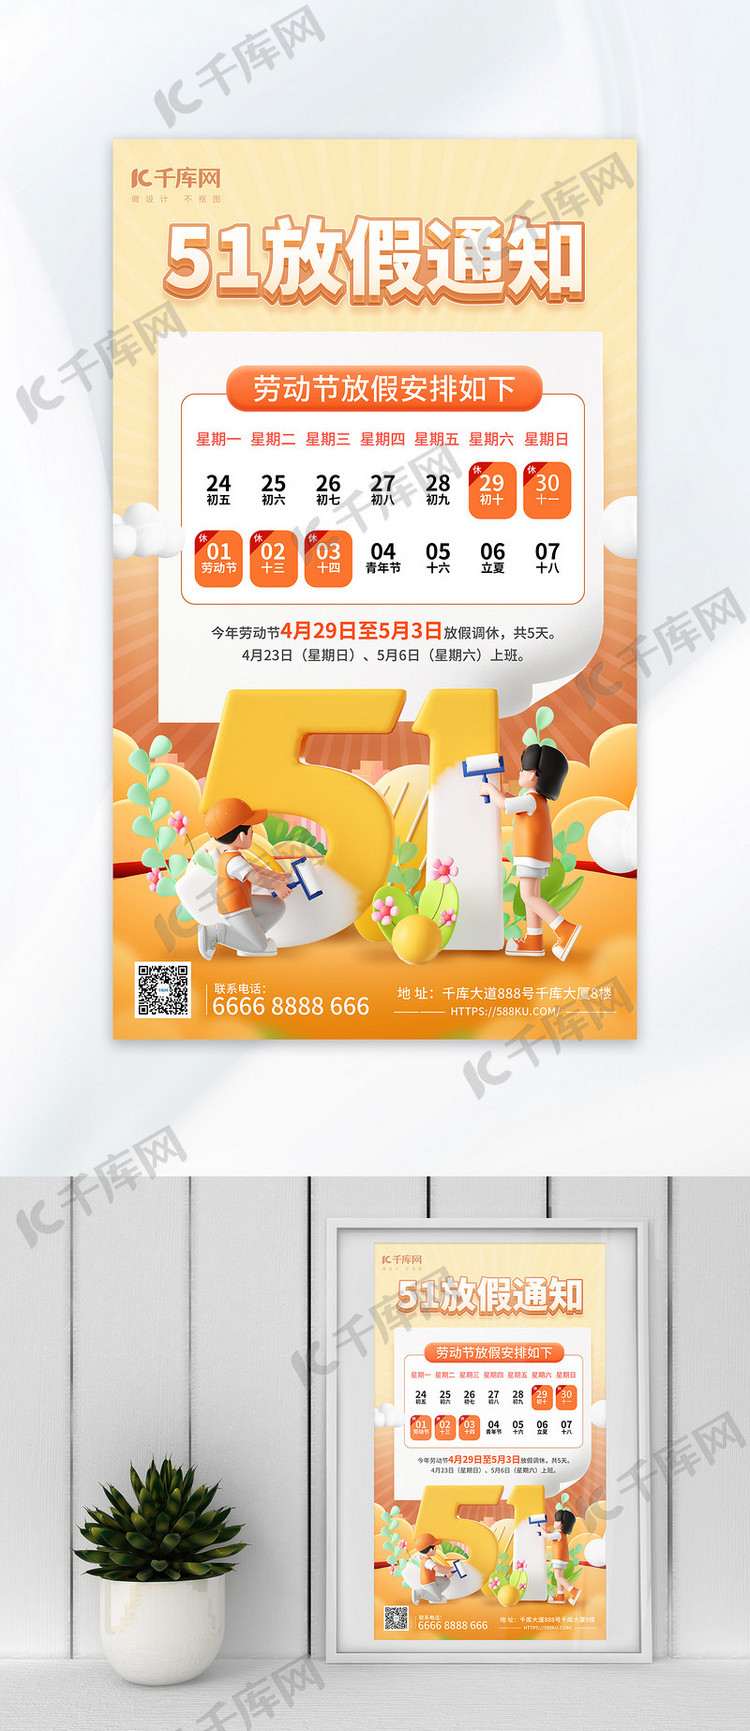 51劳动节放假通知暖色3d海报